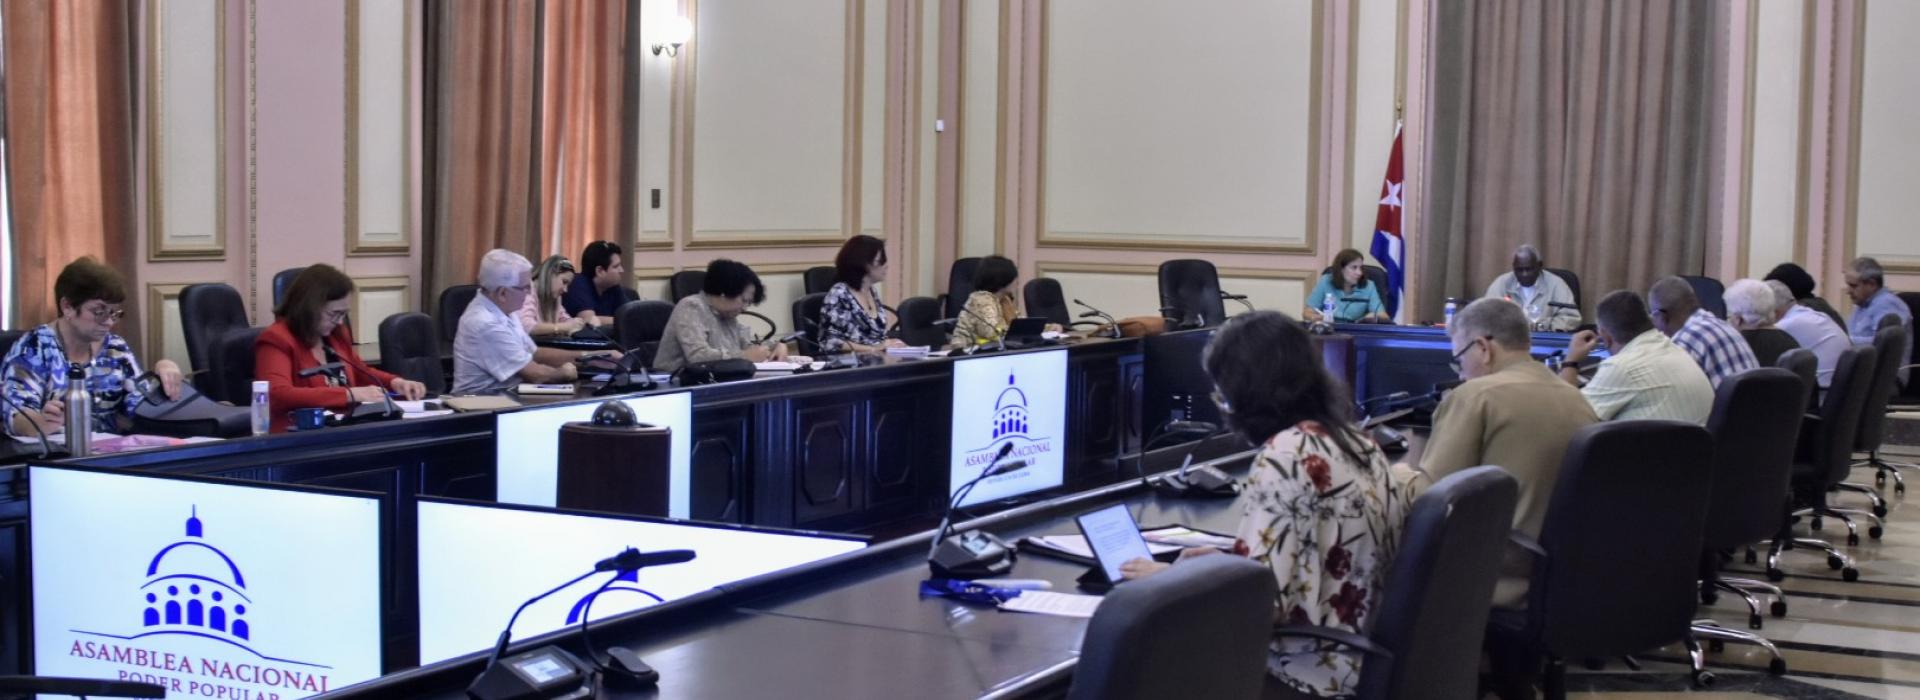 Comisiones parlamentarias con amplia agenda de trabajo previo al Segundo Período Ordinario de Sesiones de la Asamblea Nacional 